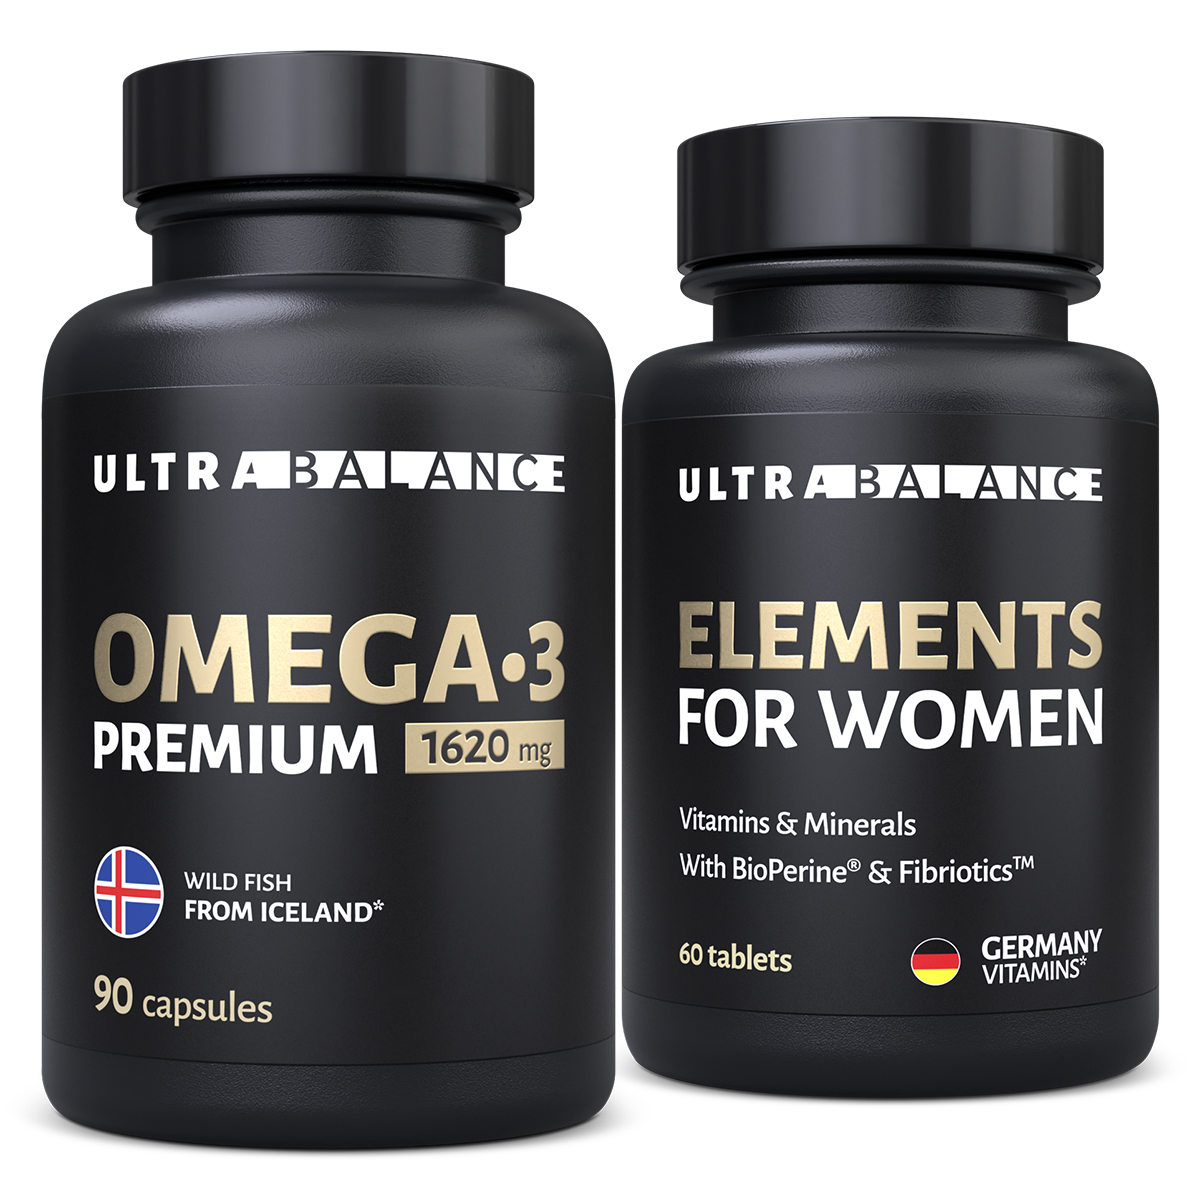 Витамины и минералы для женщин UltraBalance Elements for women Omega 3 премиум - фото 1